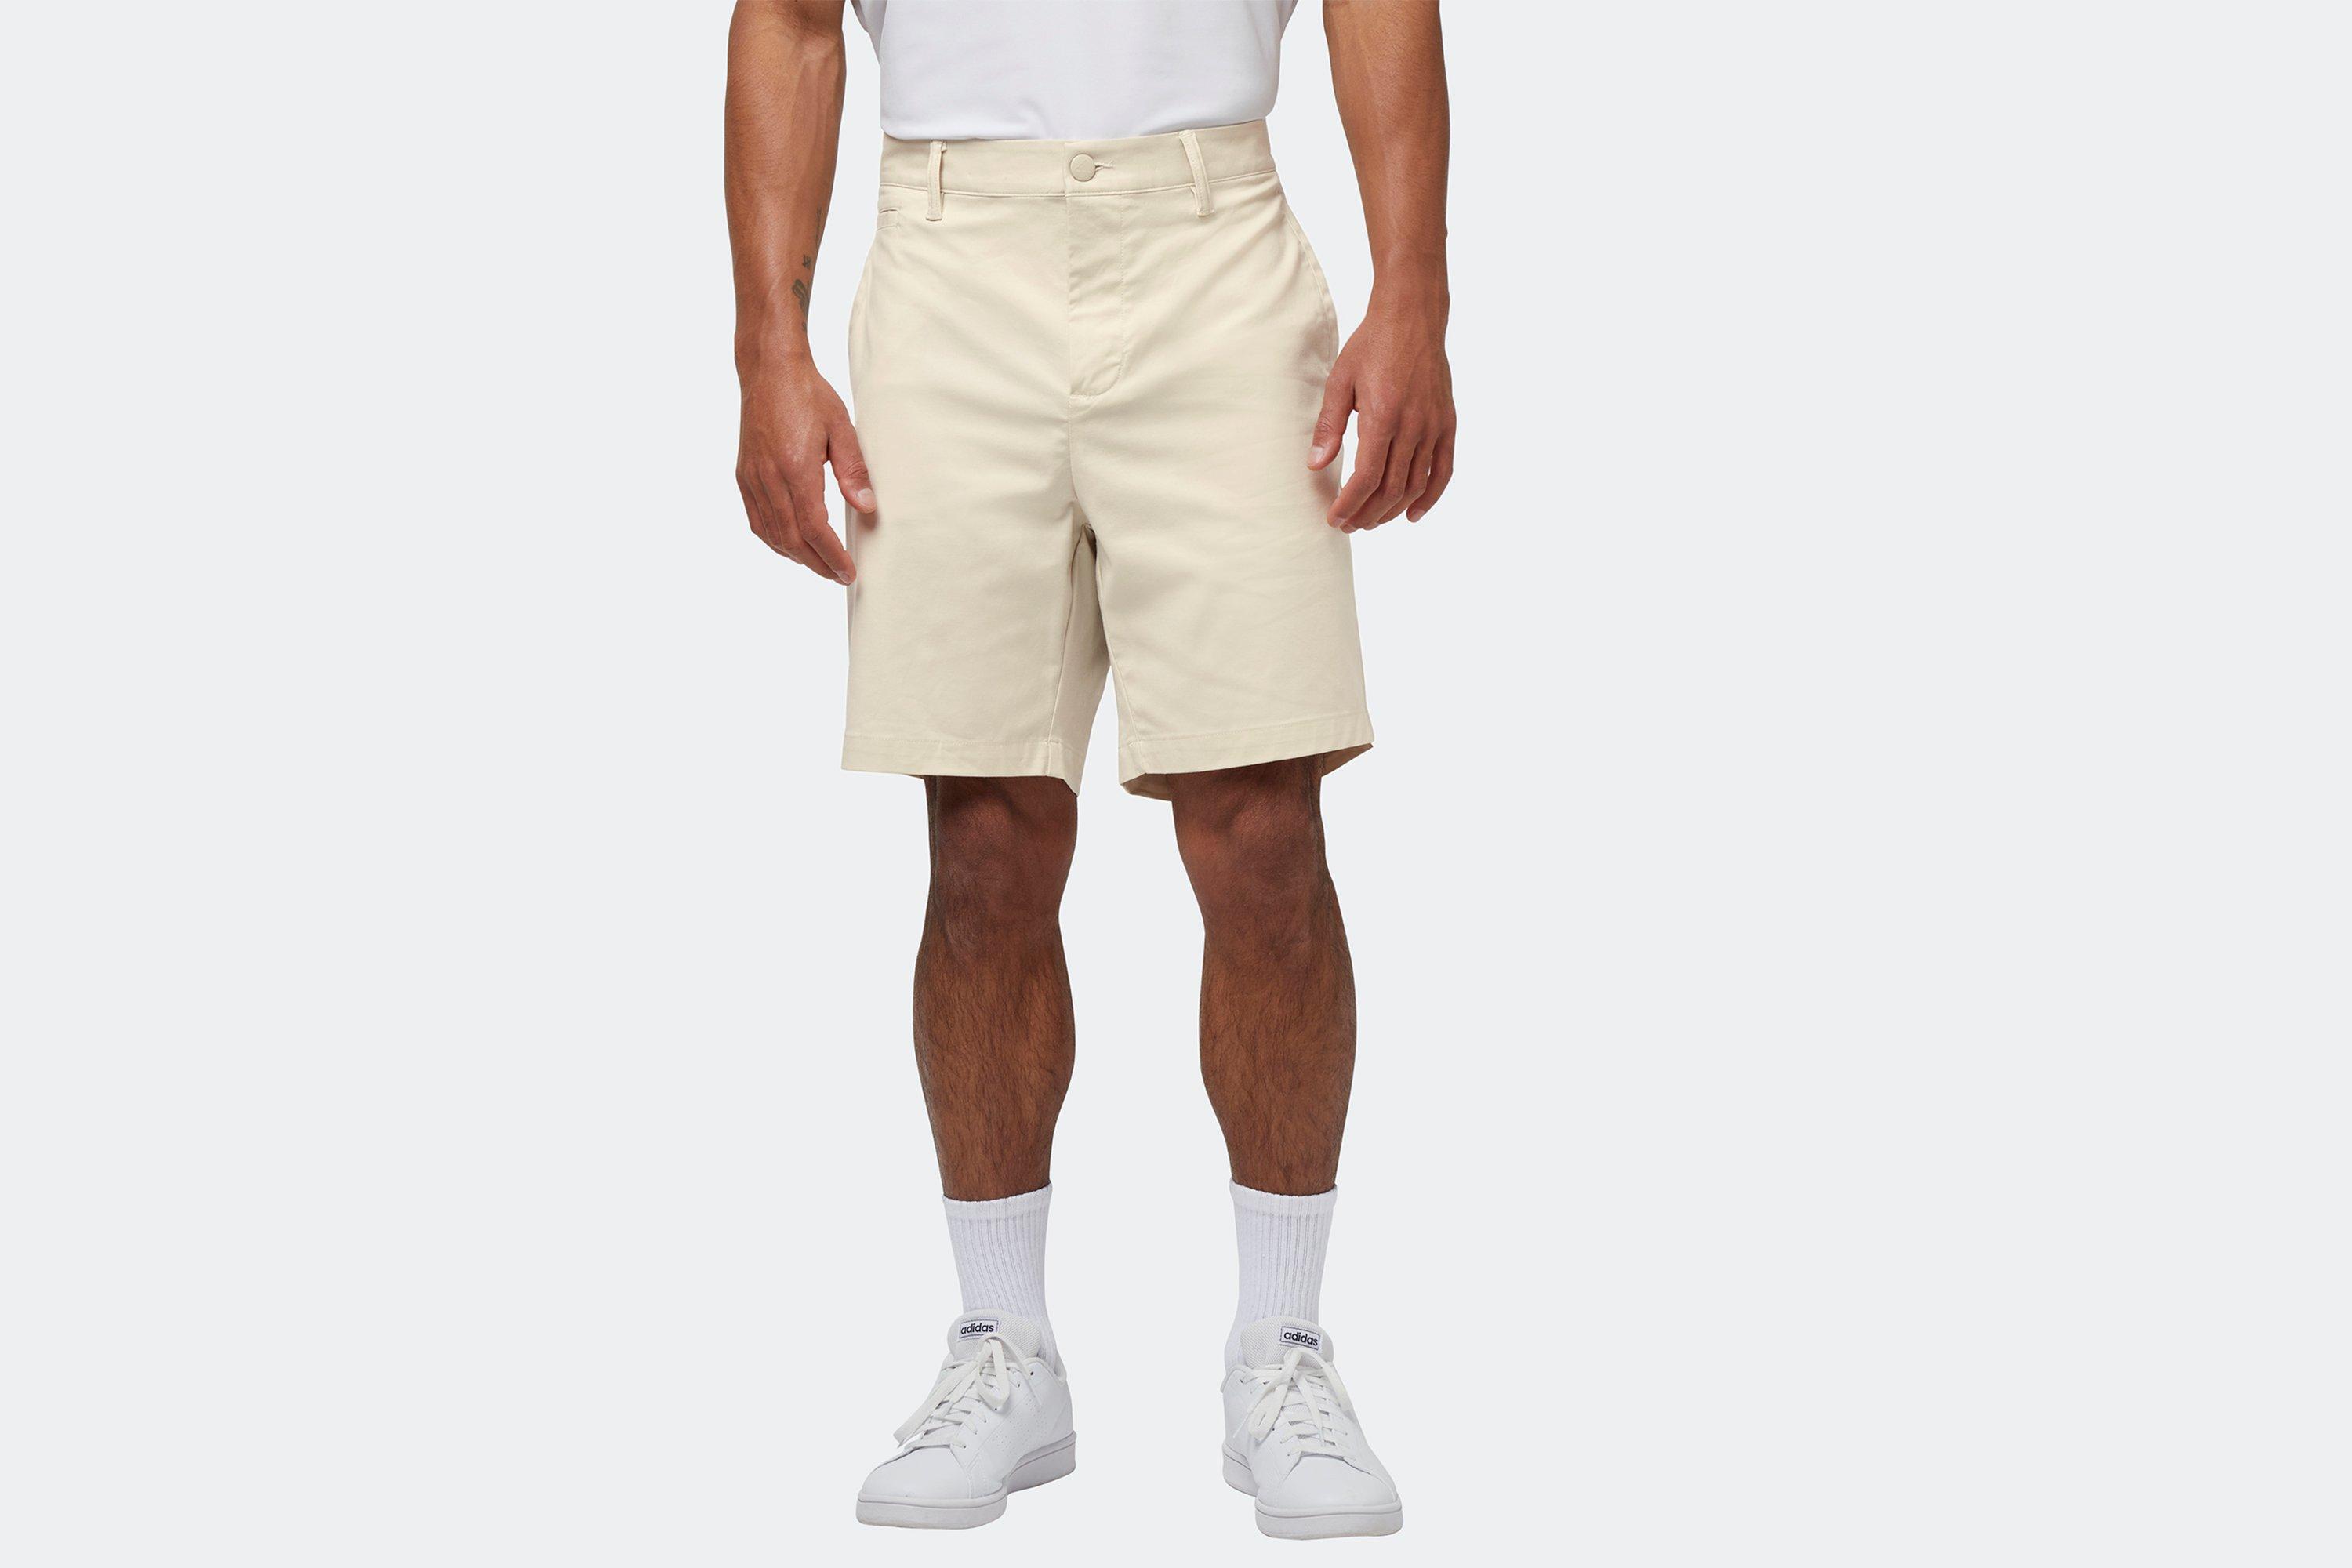 Arsenal adidas Golf Five-Pocket Shorts